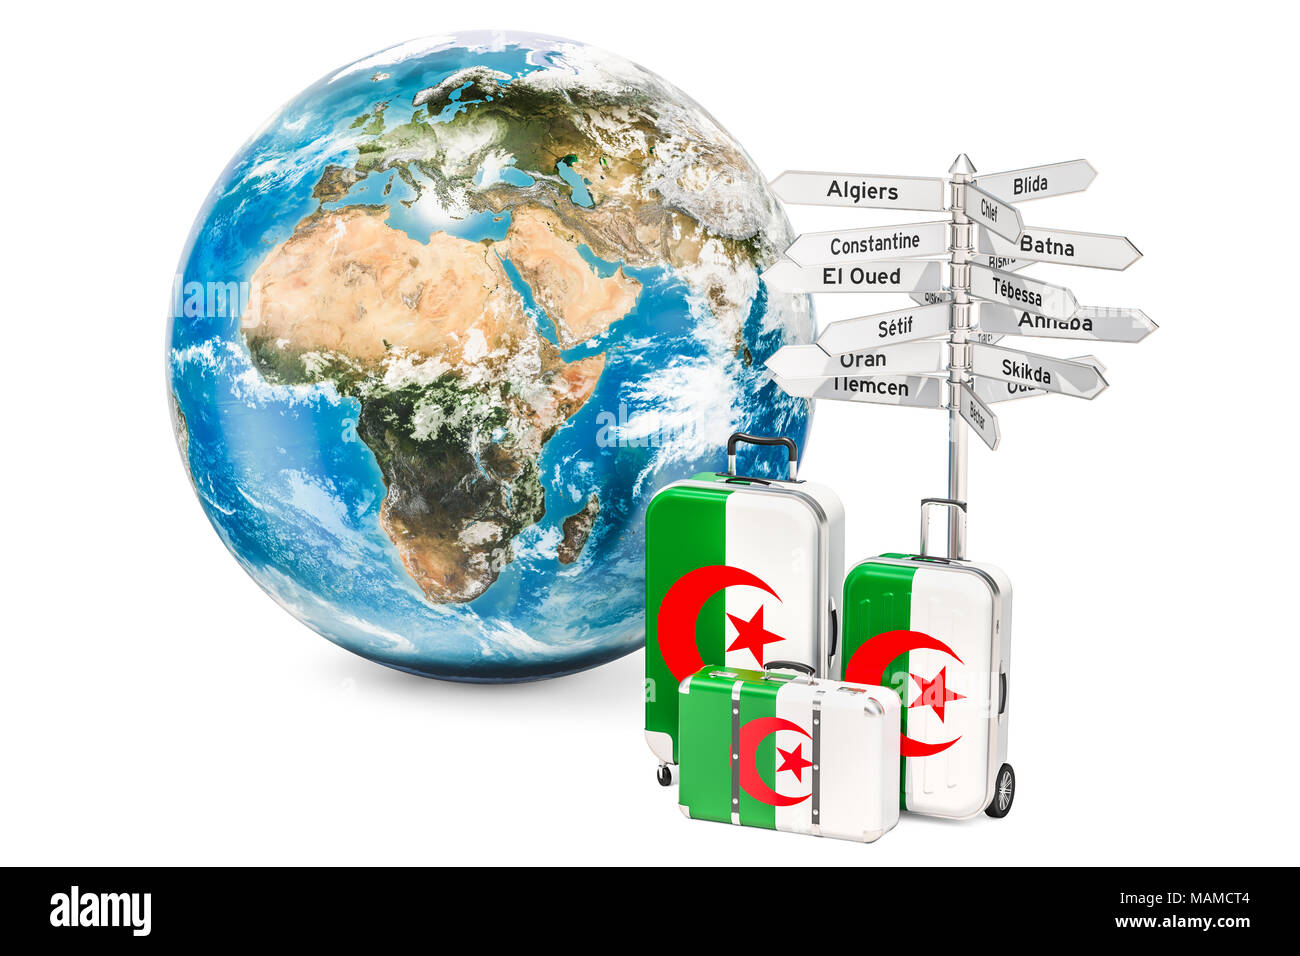 Algerien reisen Konzept. Koffer mit algerischen Flagge, Wegweiser und Globus. 3D-Rendering Stockfoto